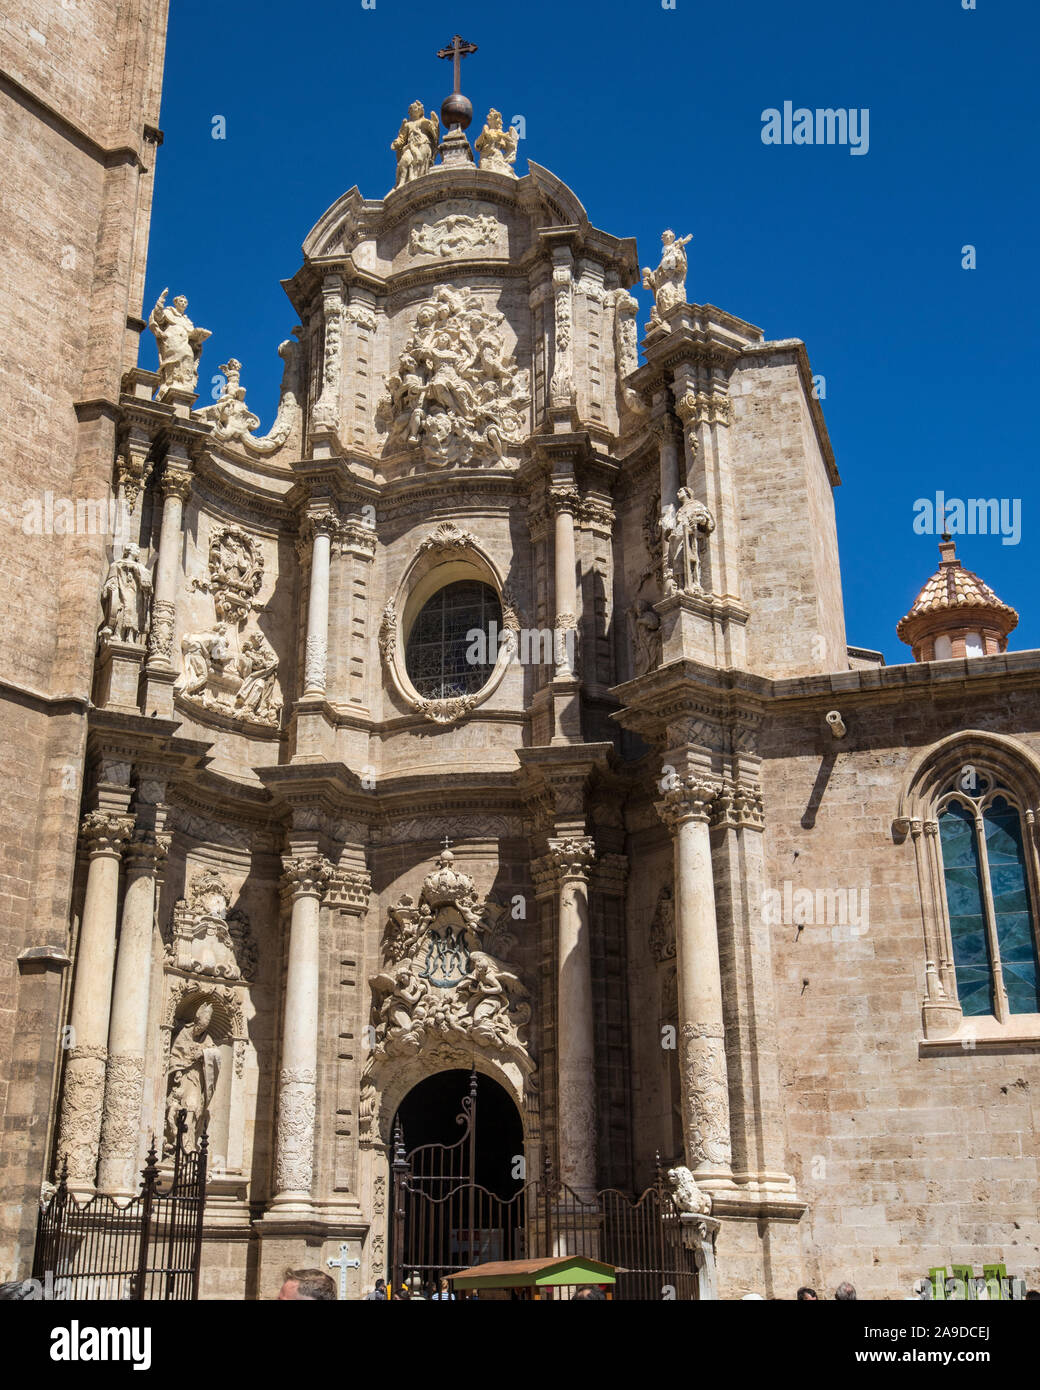 La façade de la cathédrale de Valence, également connu sous le nom de la basilique-cathédrale de l'Assomption de Notre-Dame de Valence, dans la ville de Valence Banque D'Images